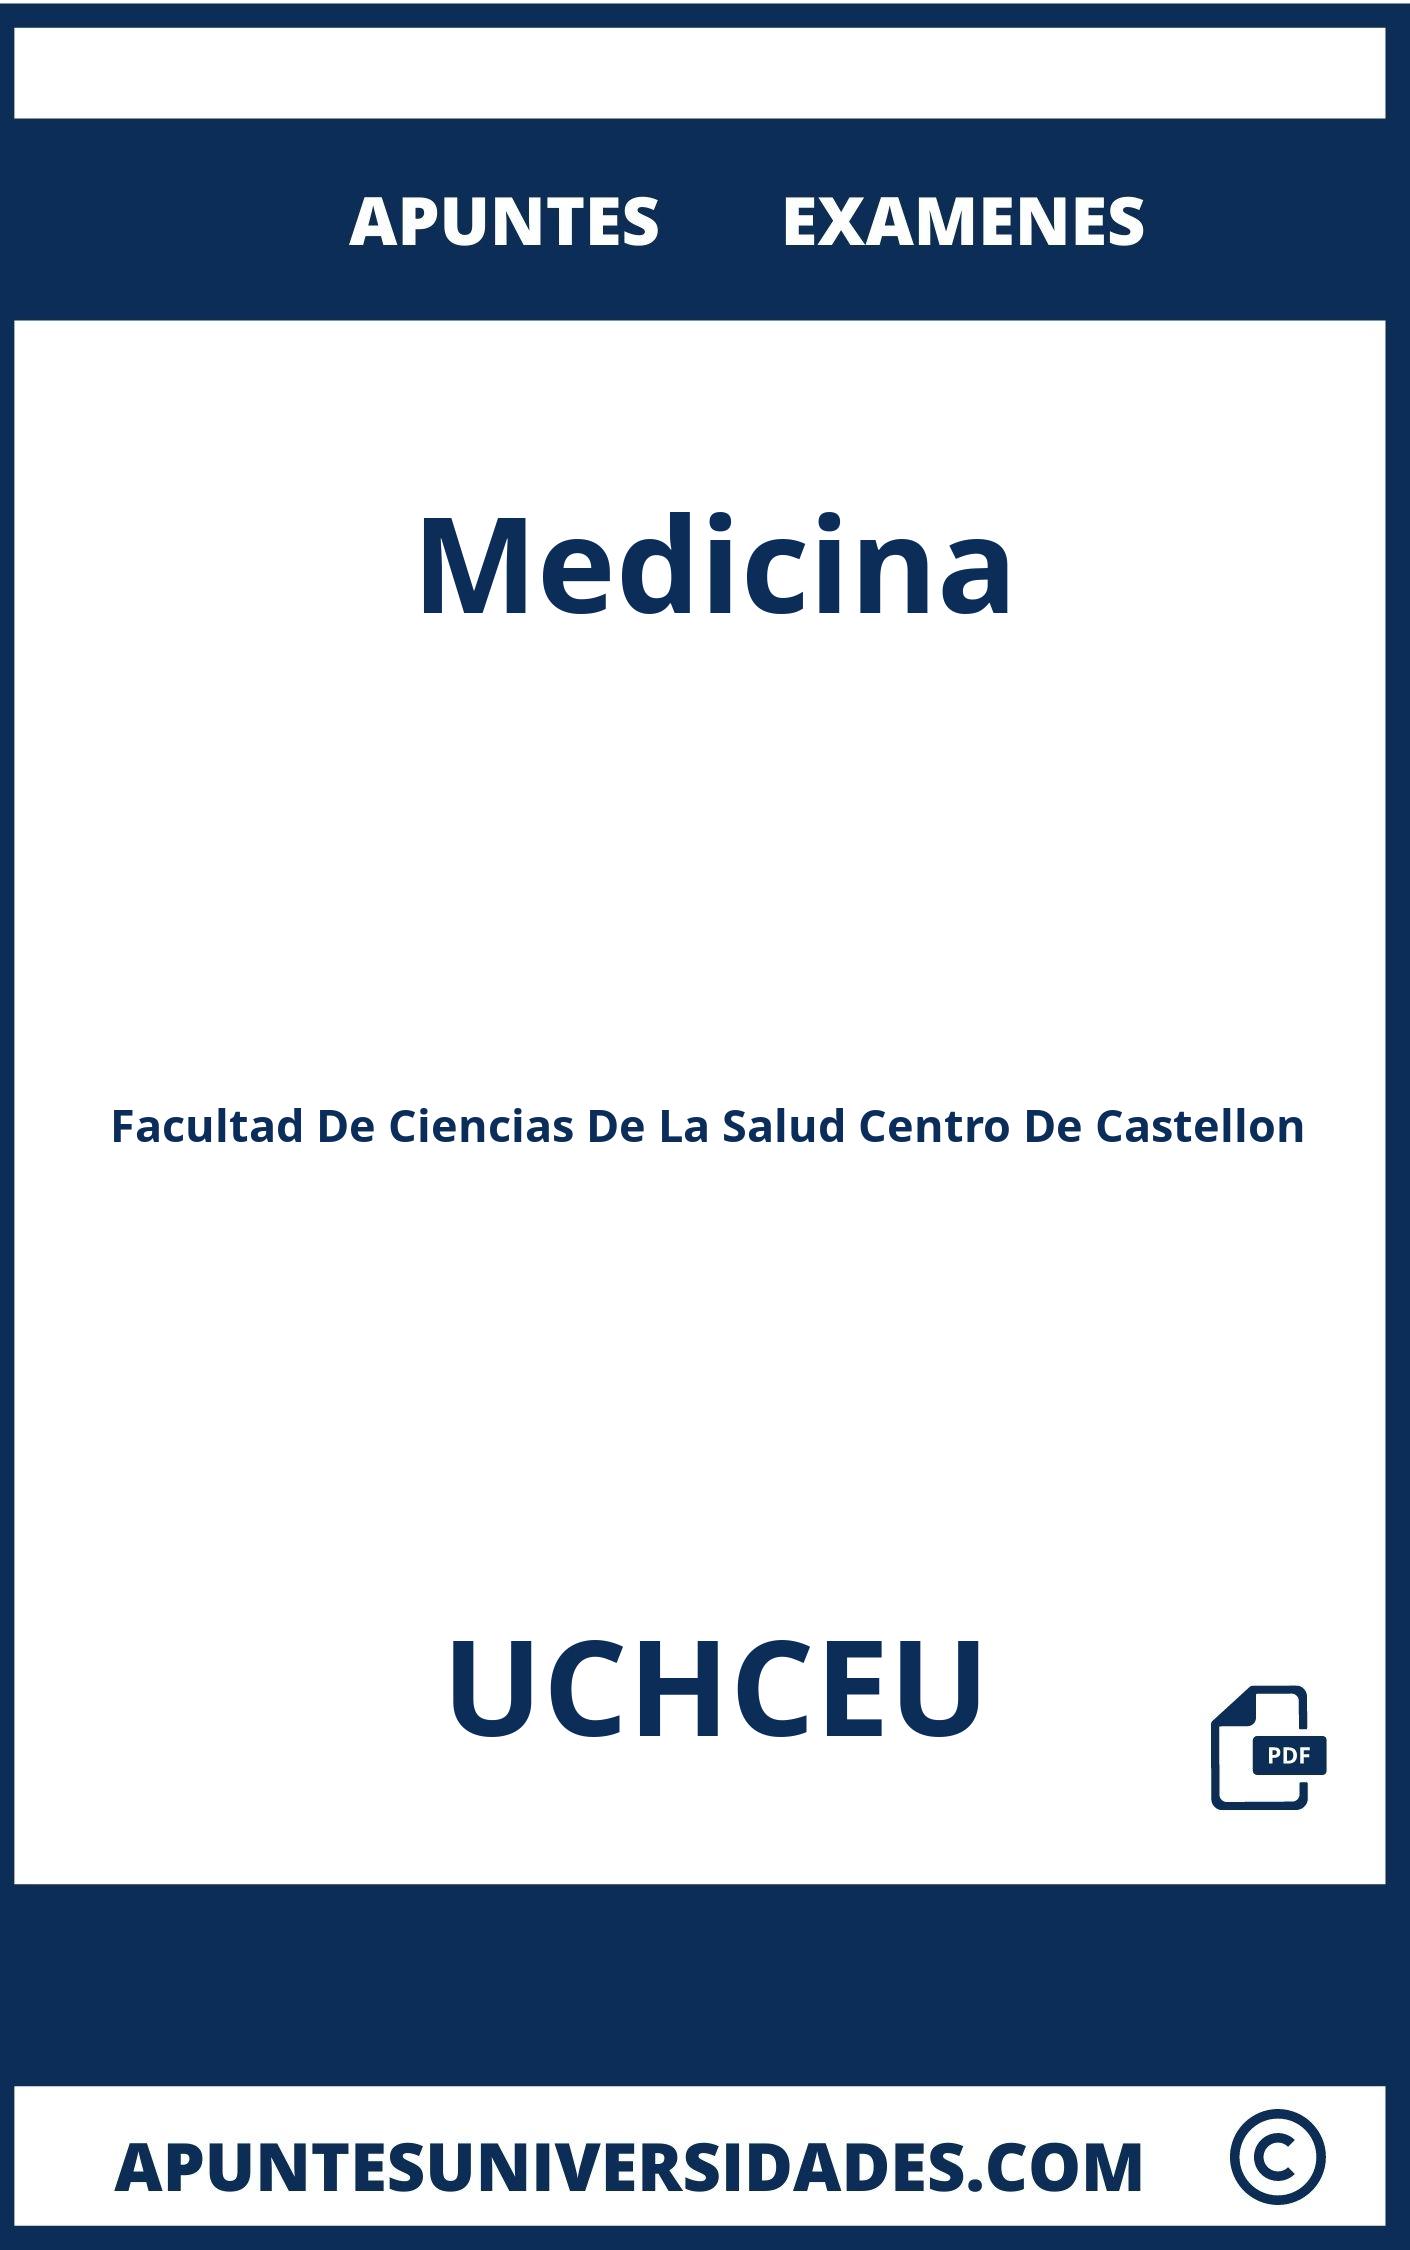 Examenes y Apuntes de Medicina UCHCEU